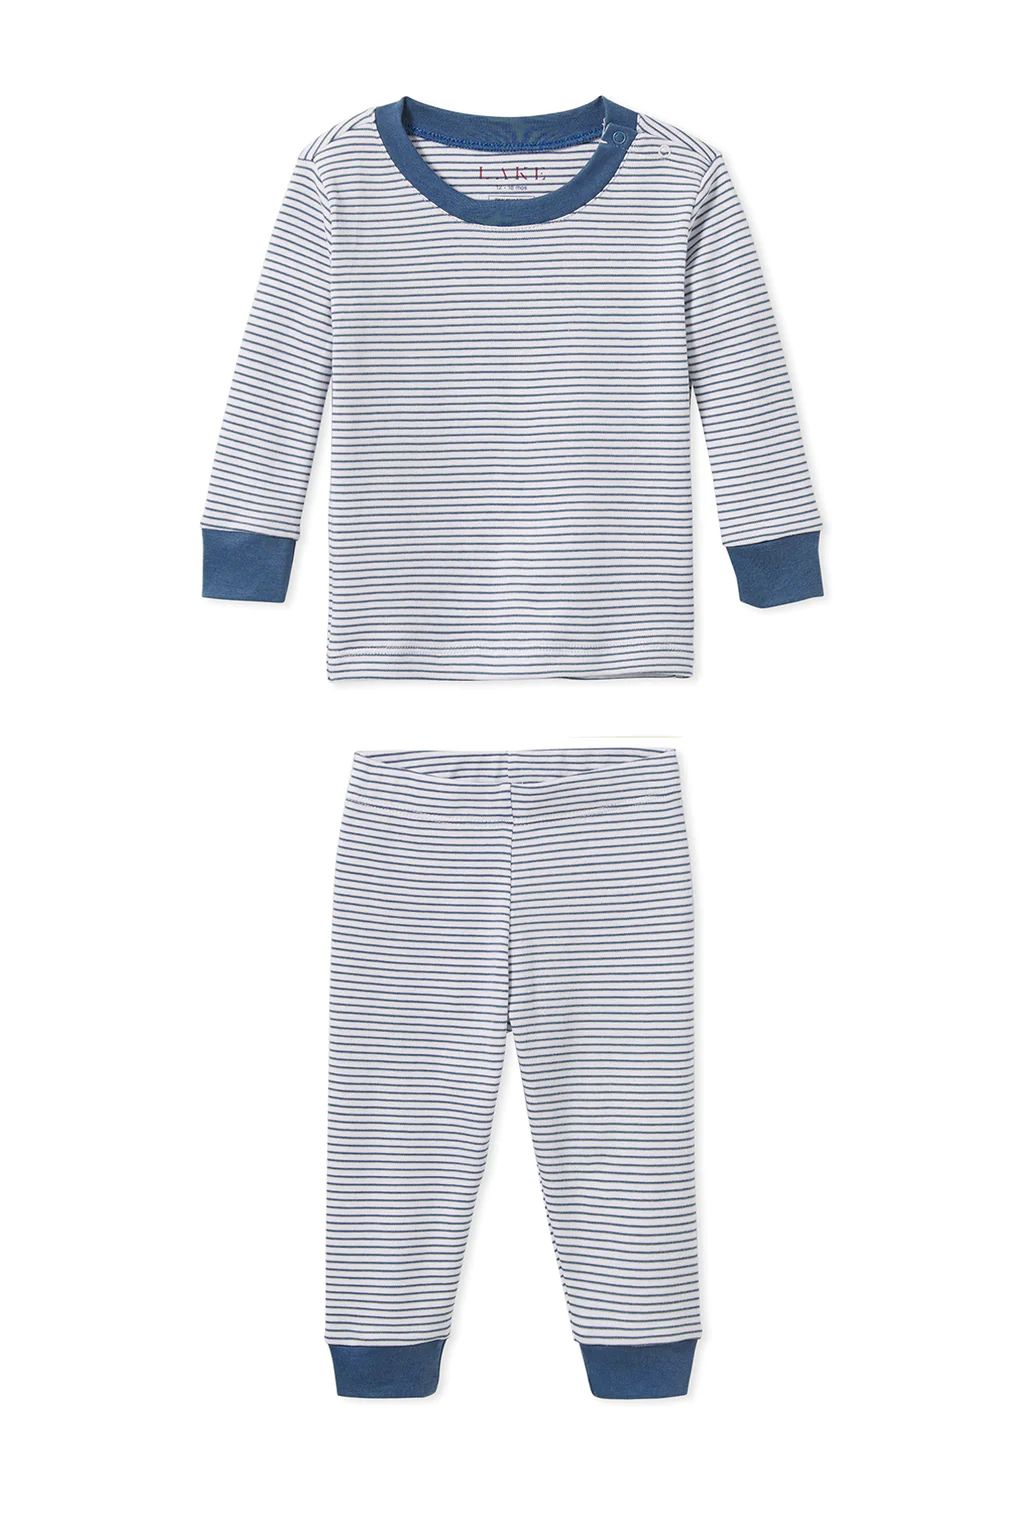 Baby Long-Long Set in Classic Navy | Lake Pajamas